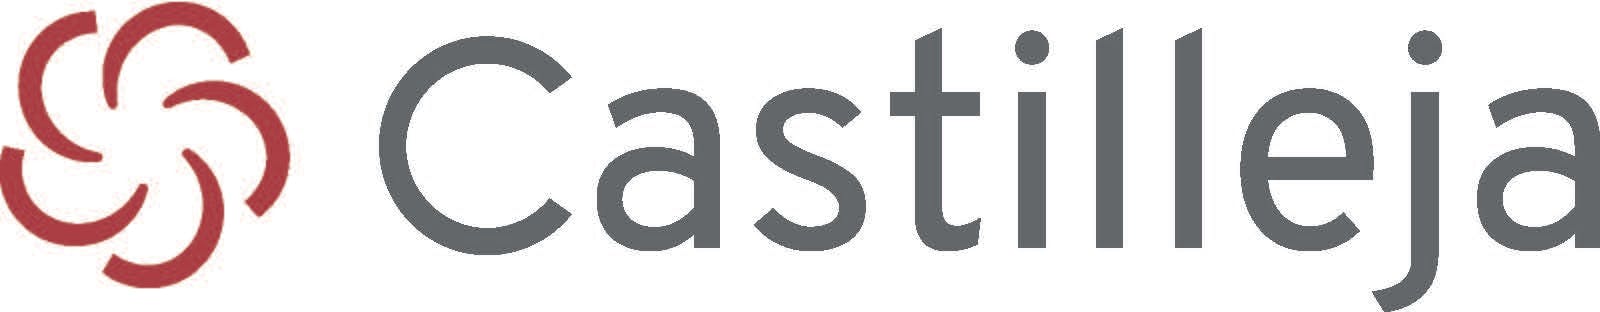 Castilleja School logo